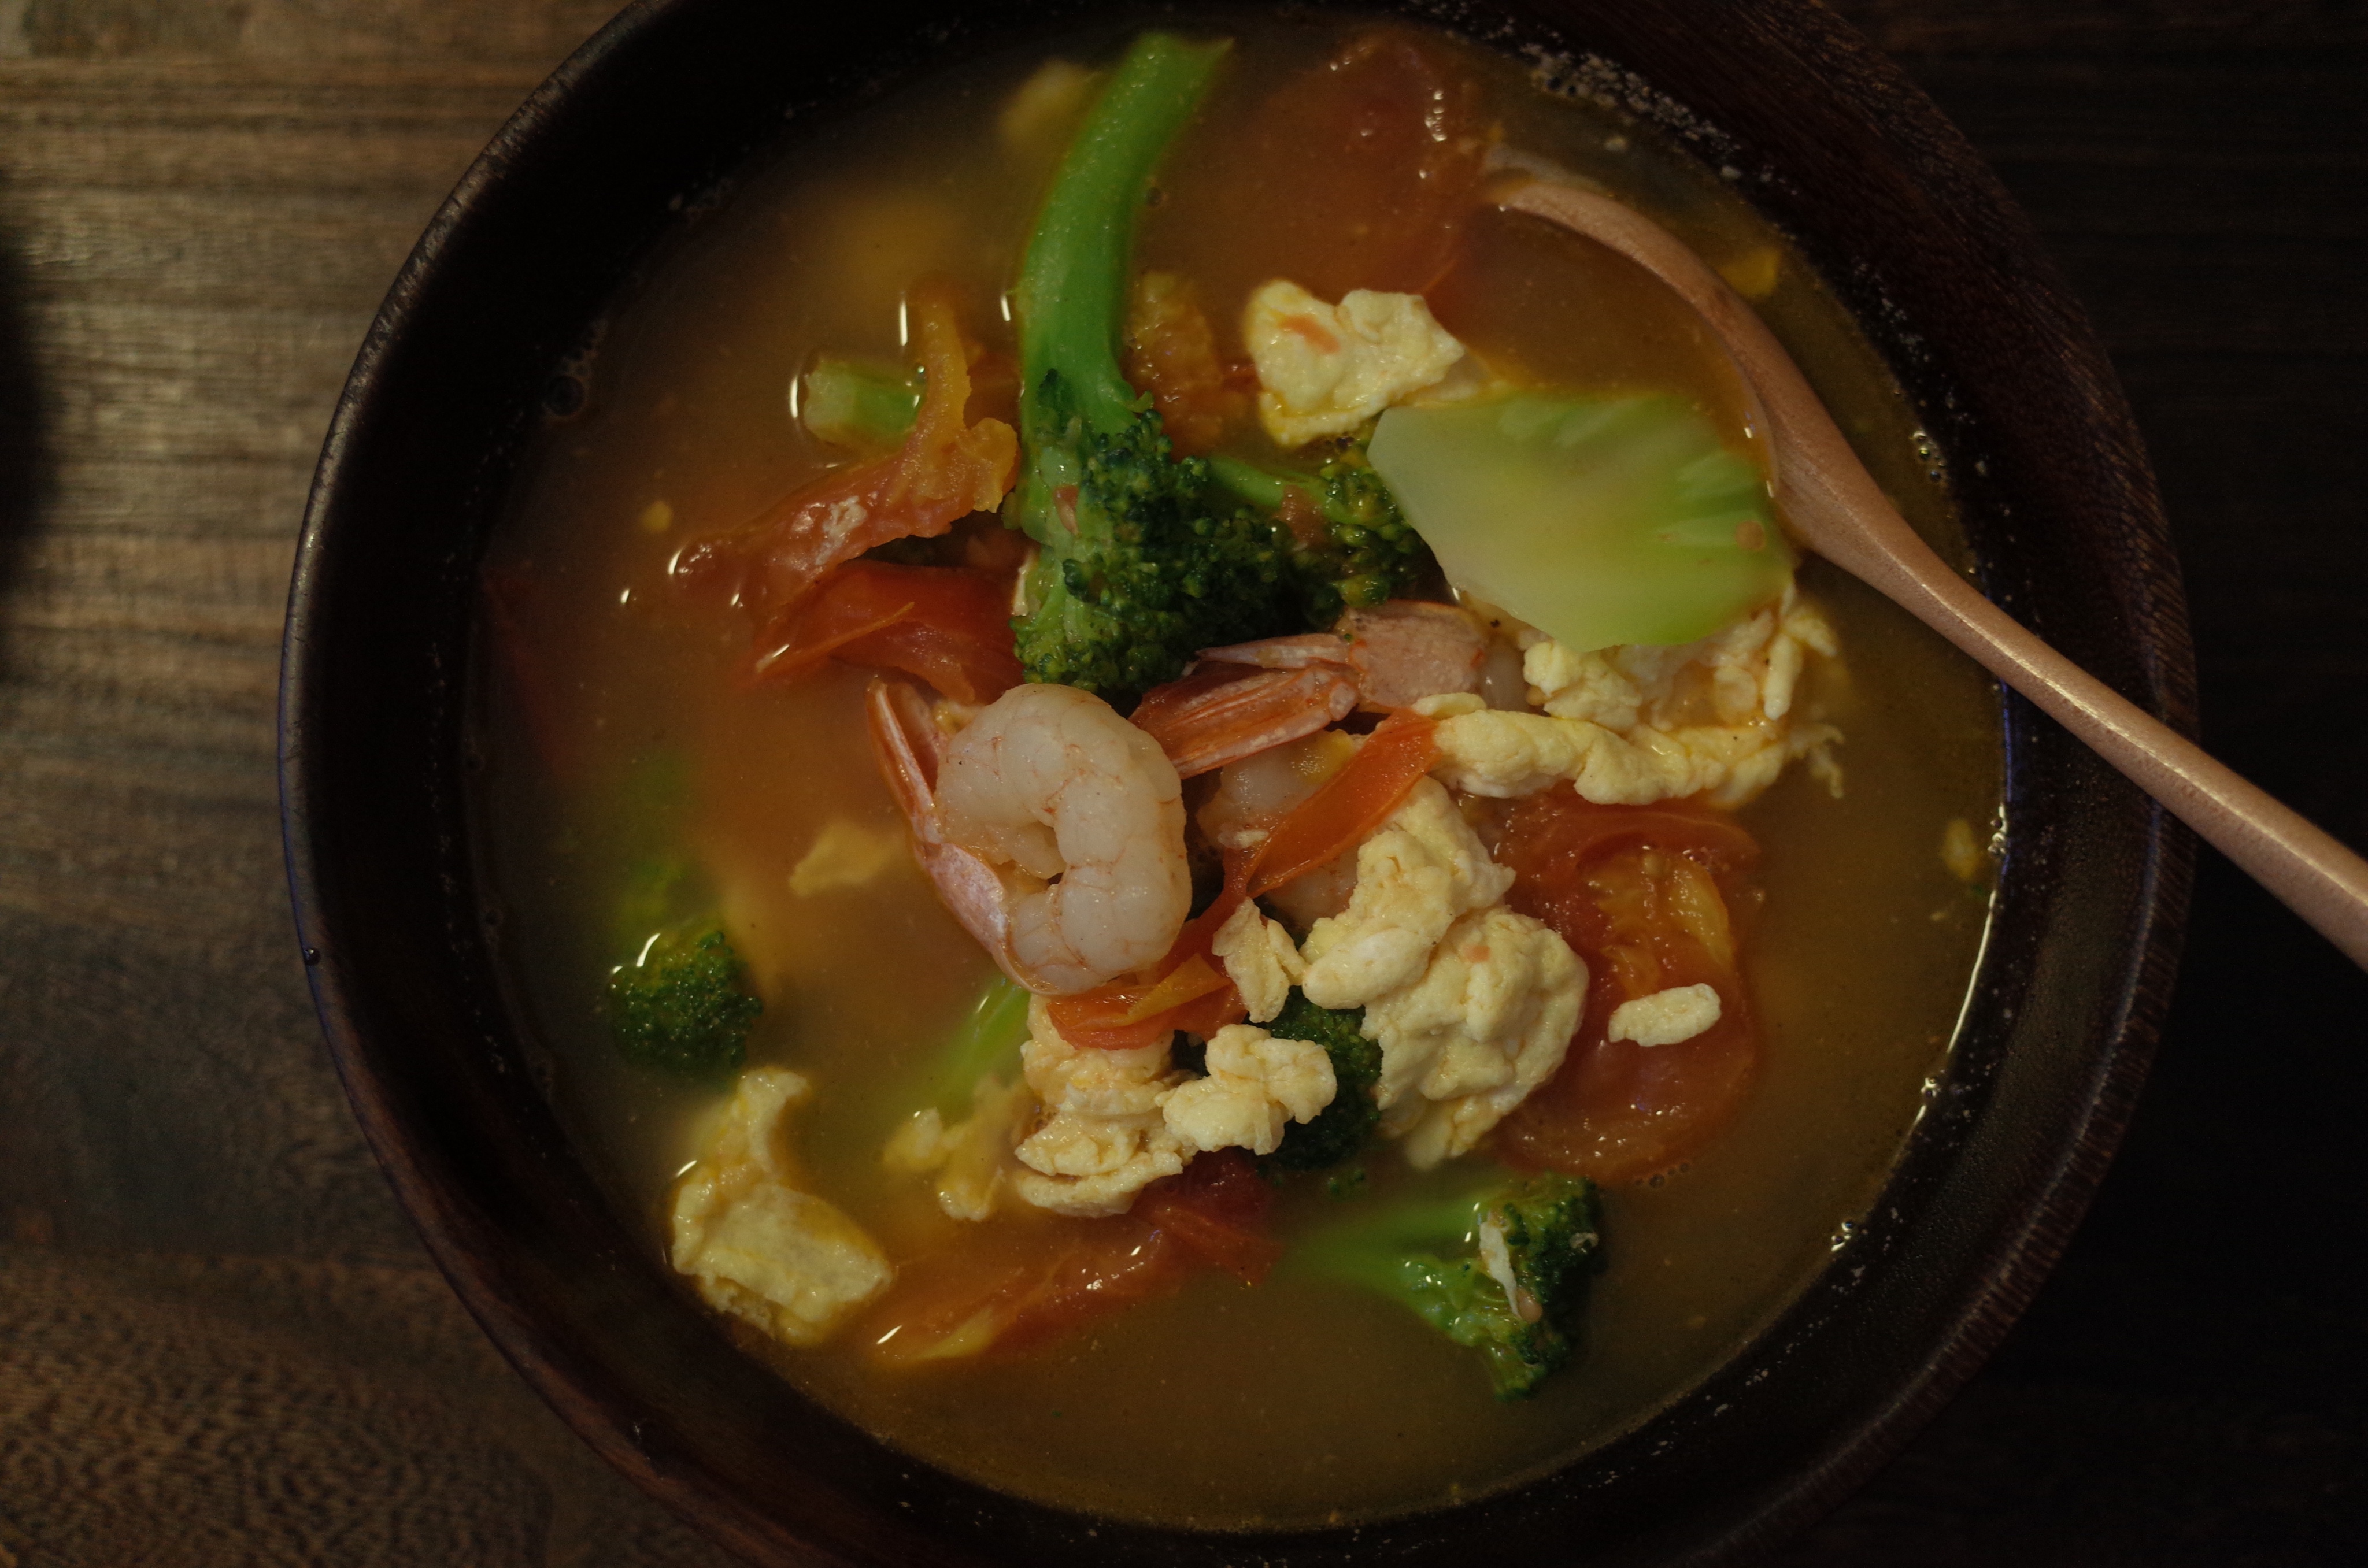 虾仁青菜汤图片